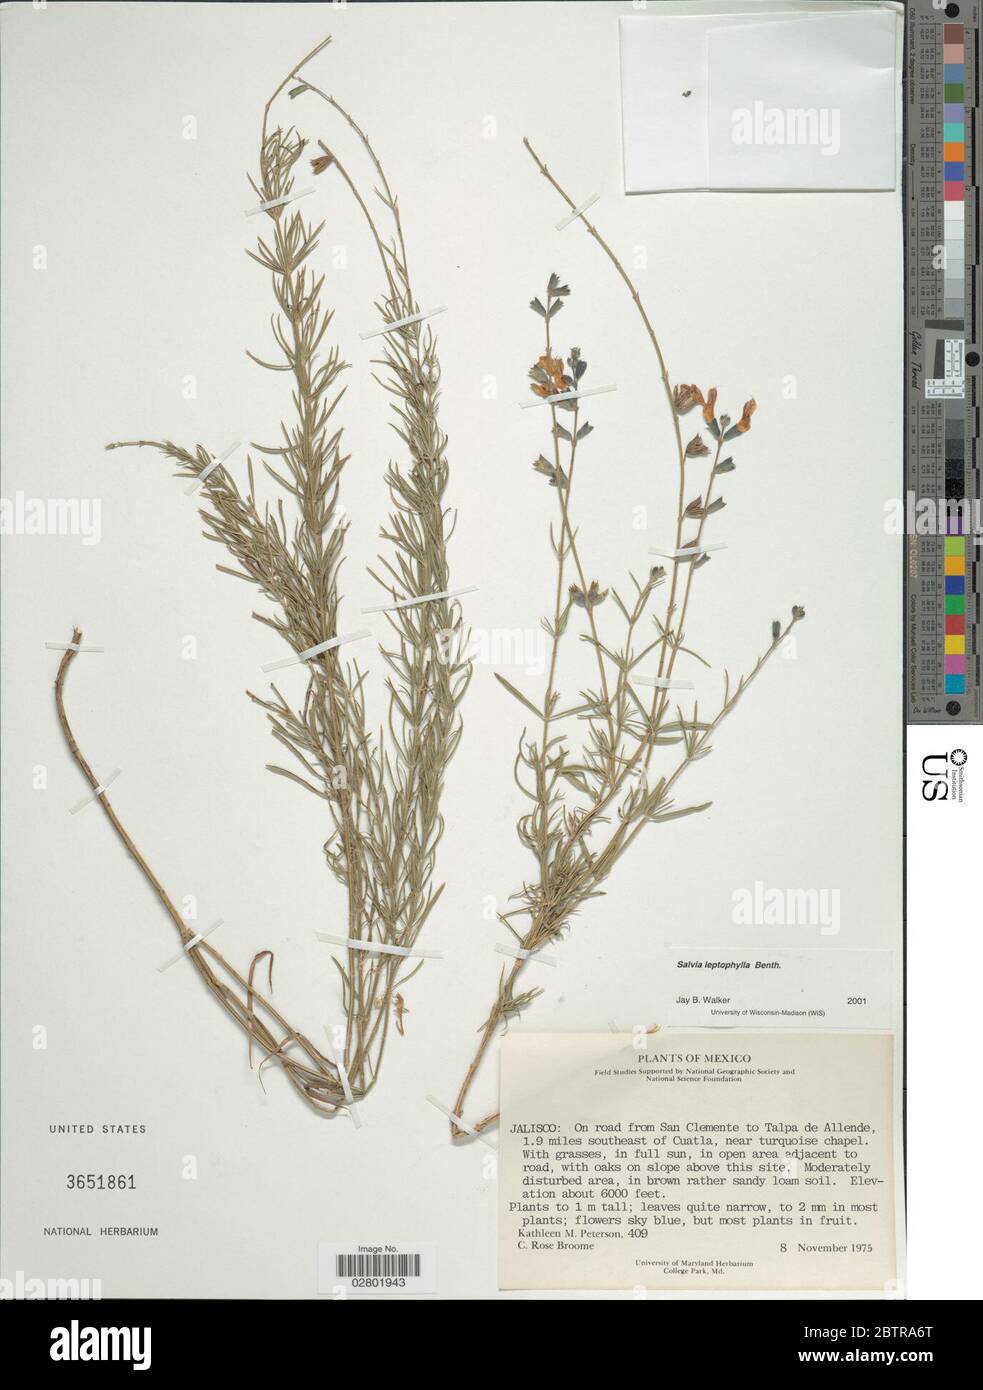 Salvia leptophylla Benth. Stock Photo